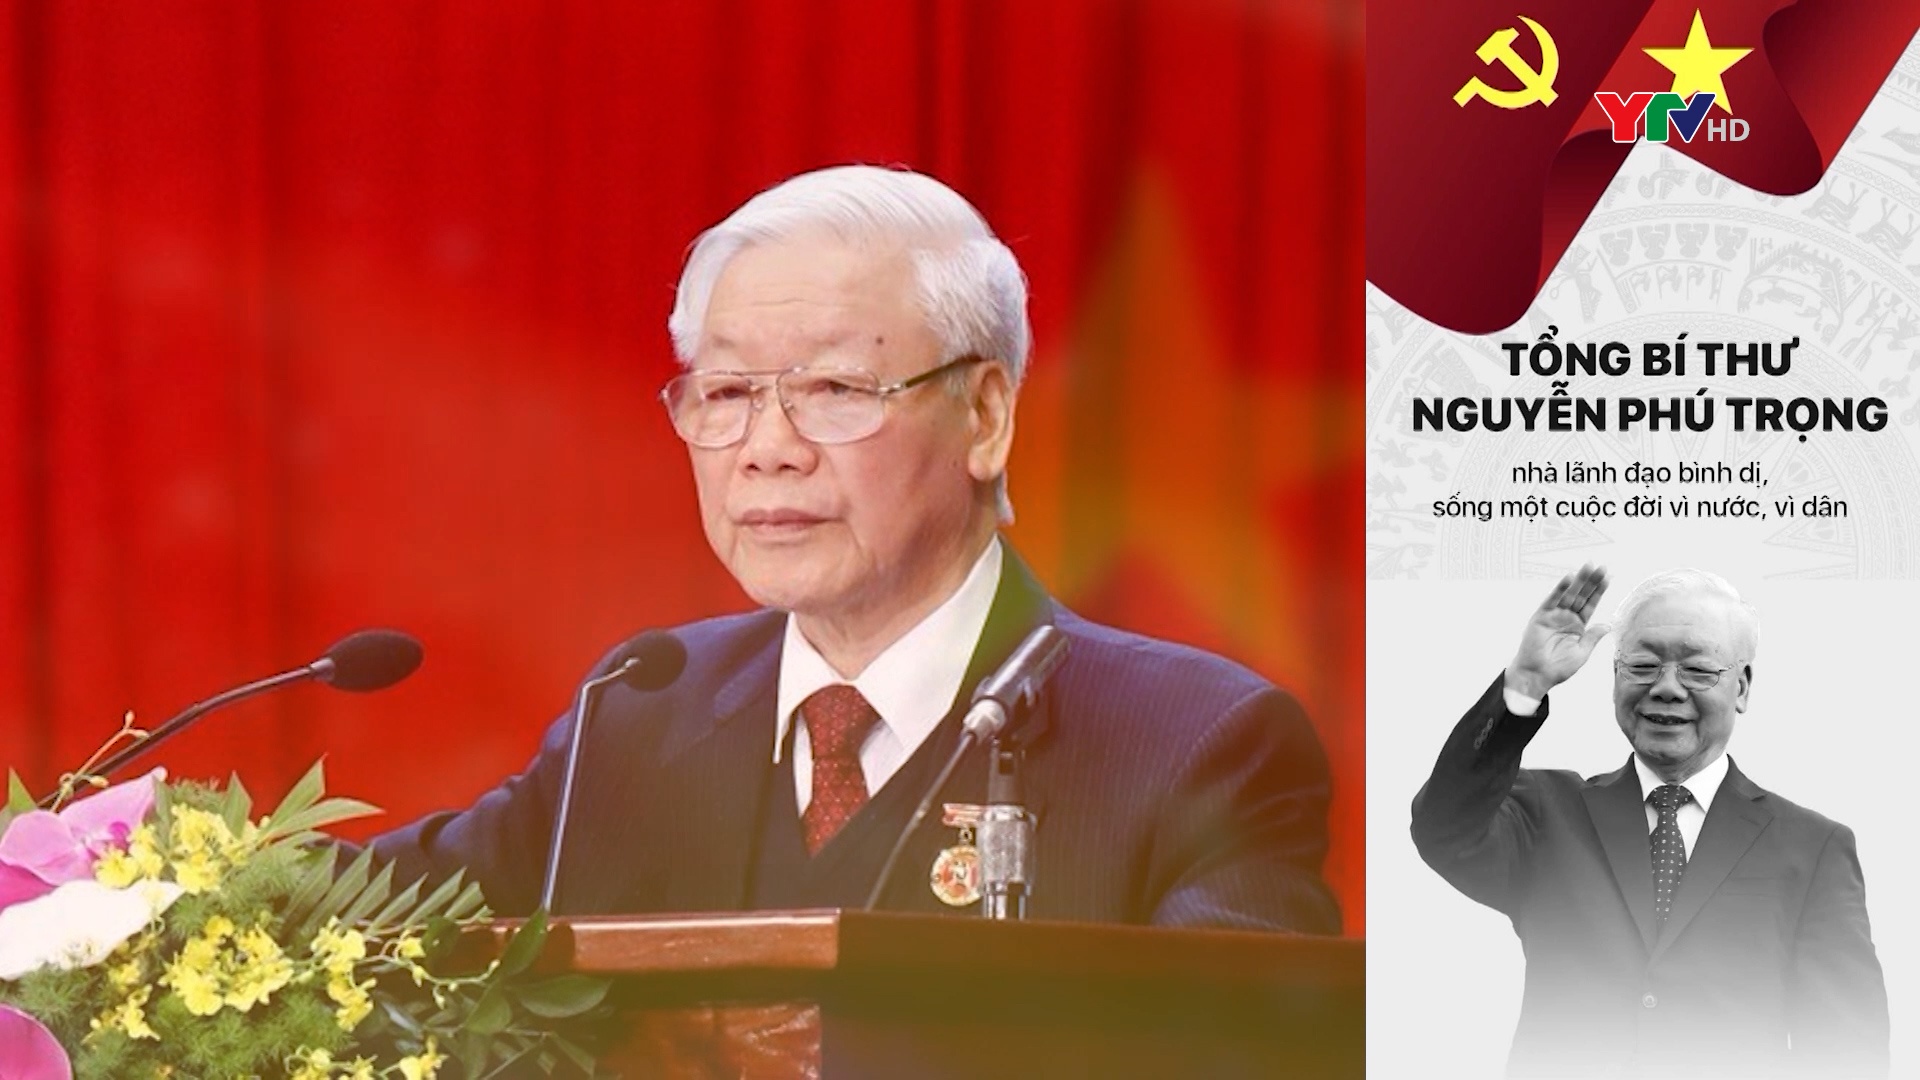 Tình cảm của nhân dân Yên Bái đối với Tổng Bí thư Nguyễn Phú Trọng